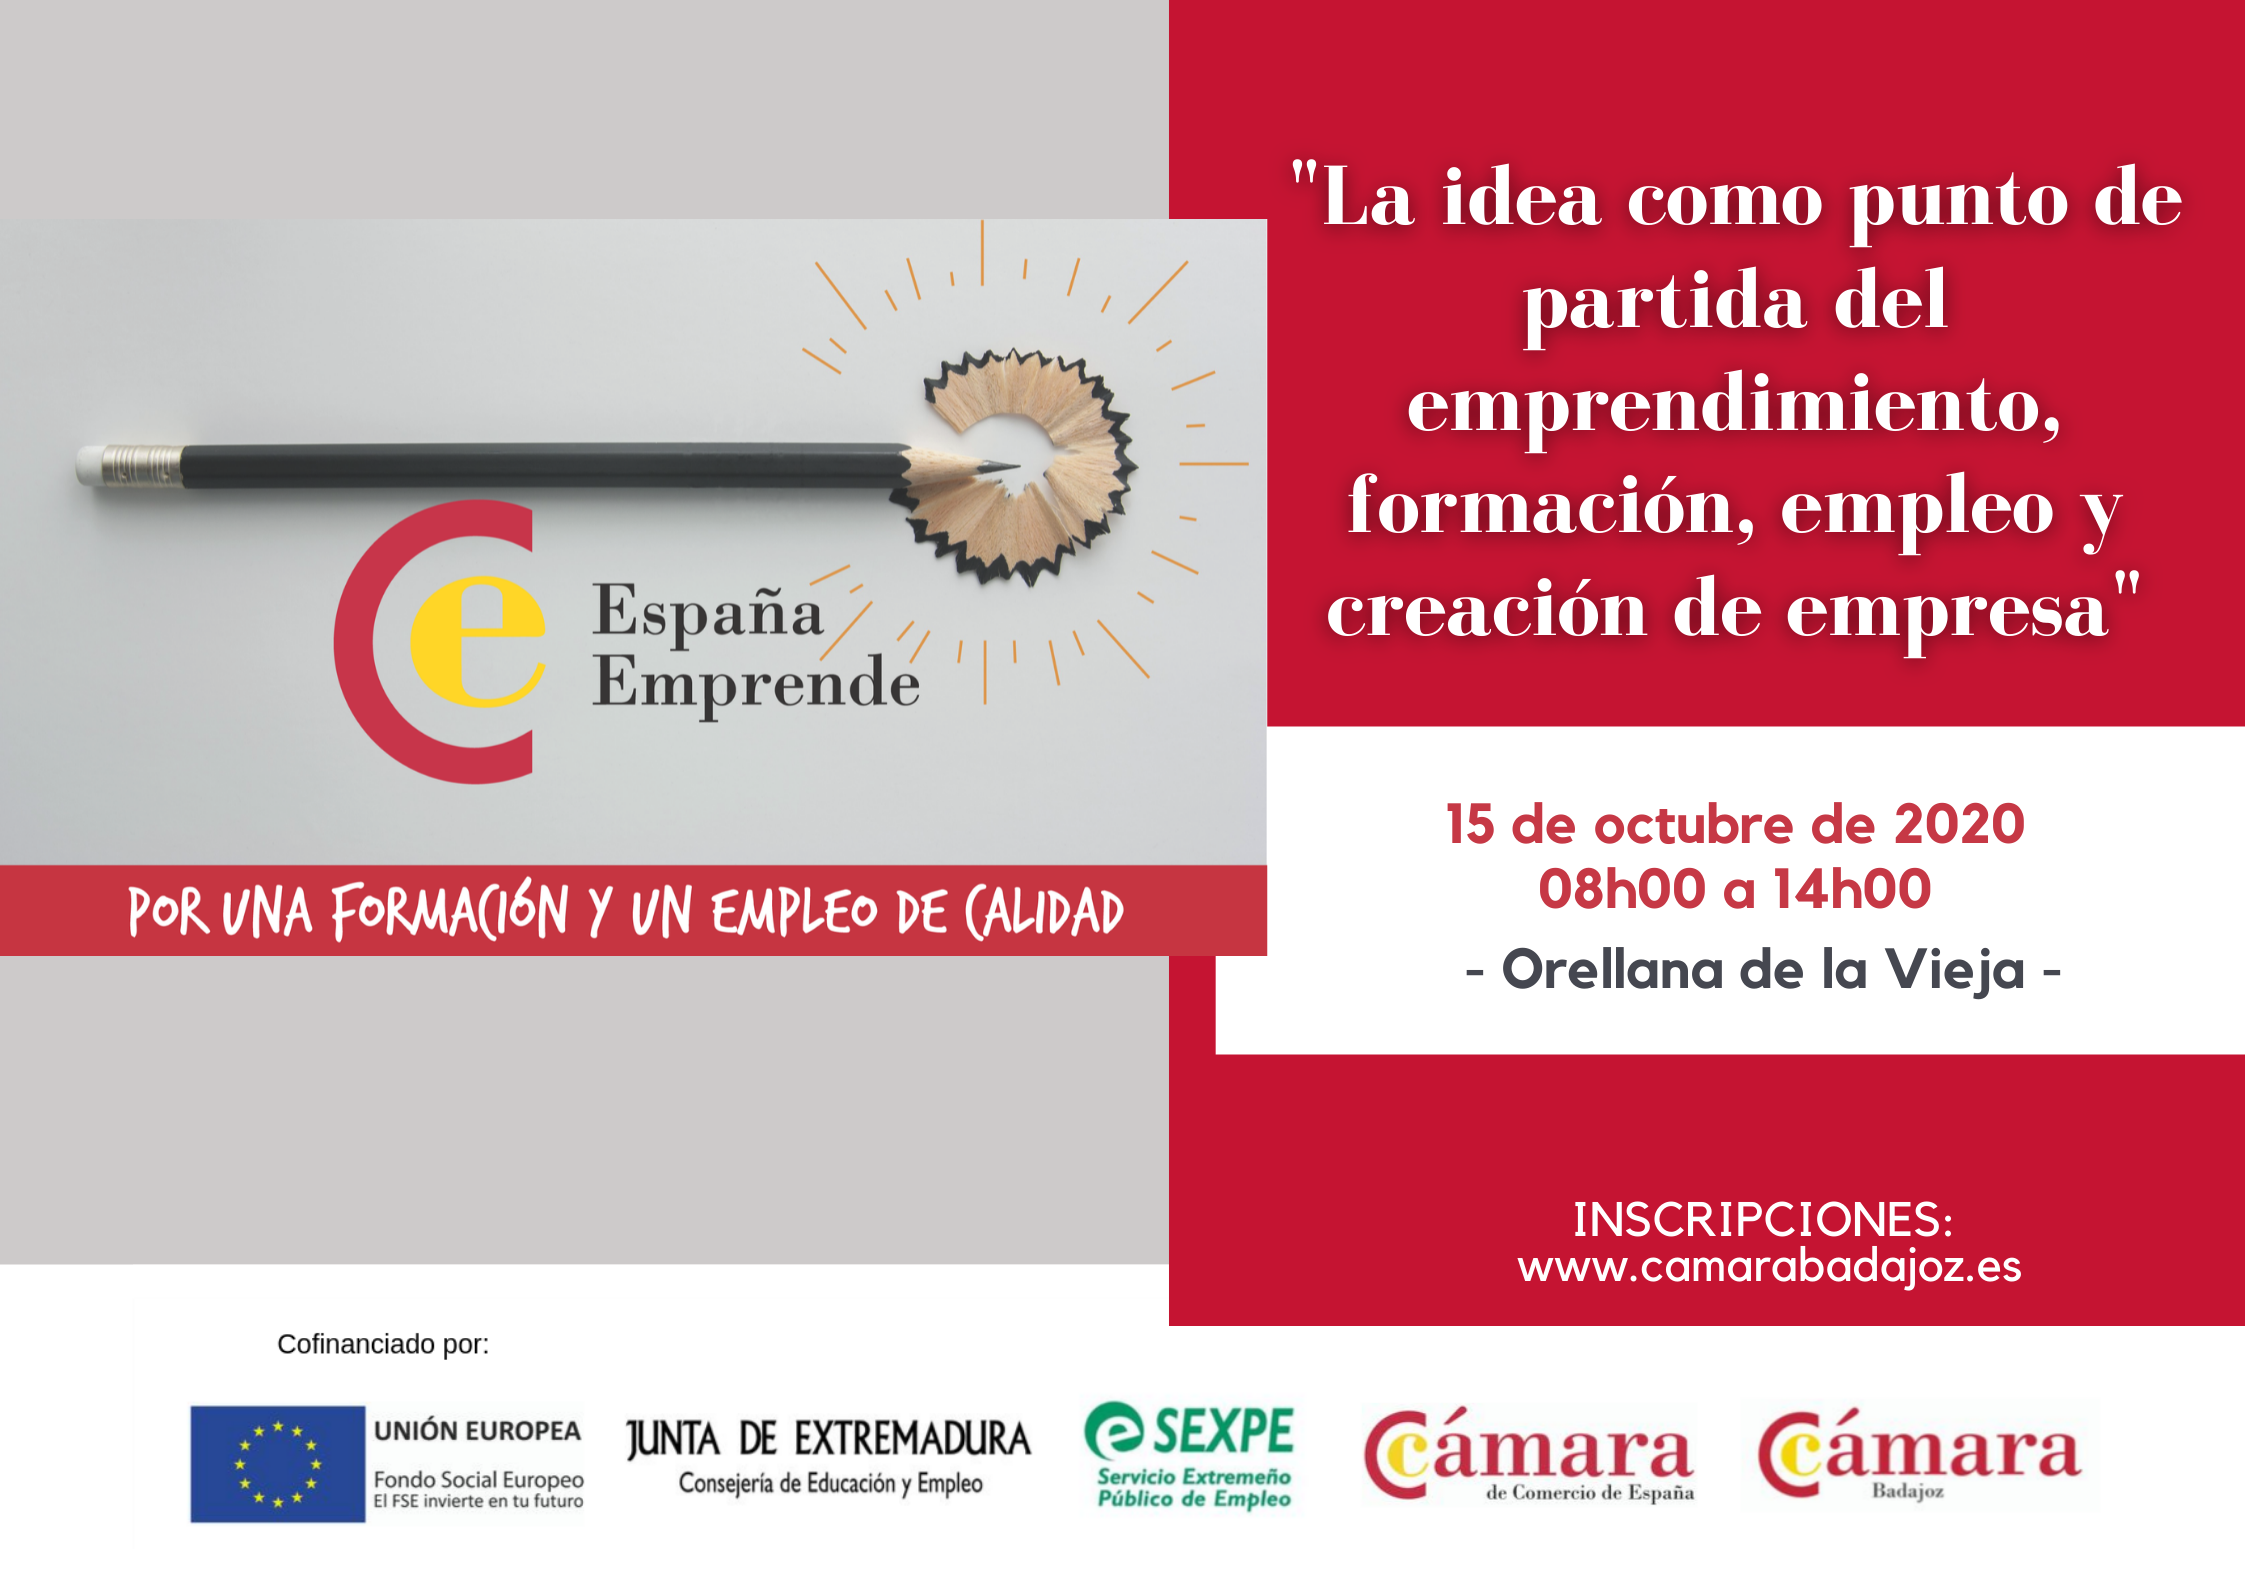 ORELLANA DE LA VIEJA- La idea como punto de partida del emprendimiento, formación, empleo y creación de empresa